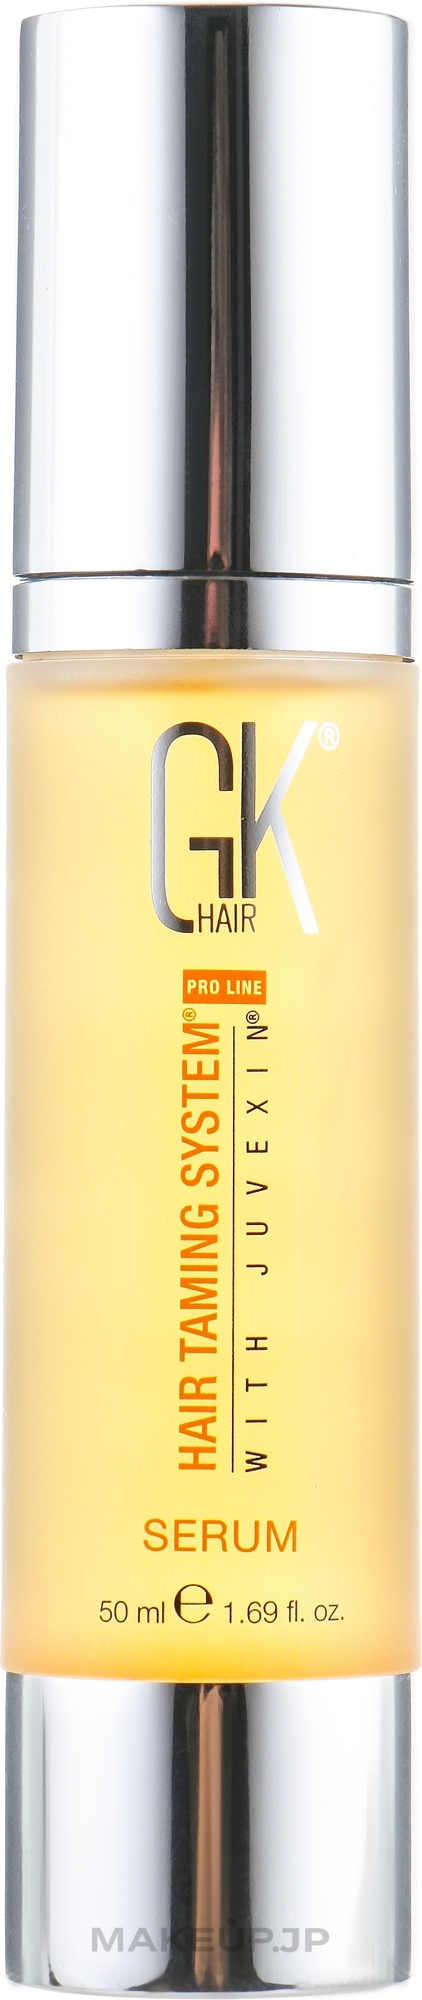 Hair Silk - GKhair Serum — photo 50 ml